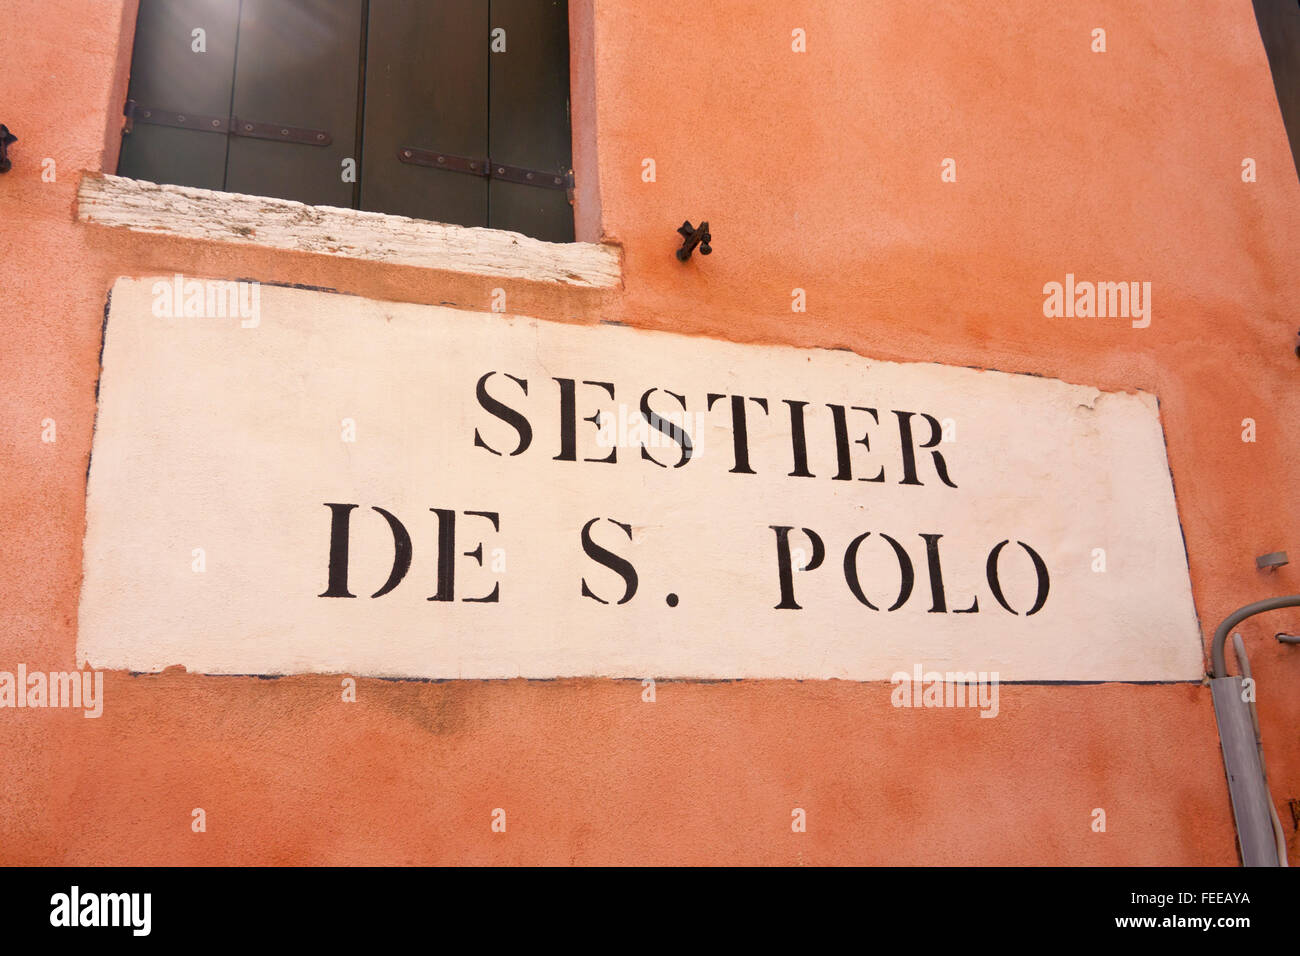 Sestier de San Polo city district boundary sign signage Venice Veneto Italy Stock Photo